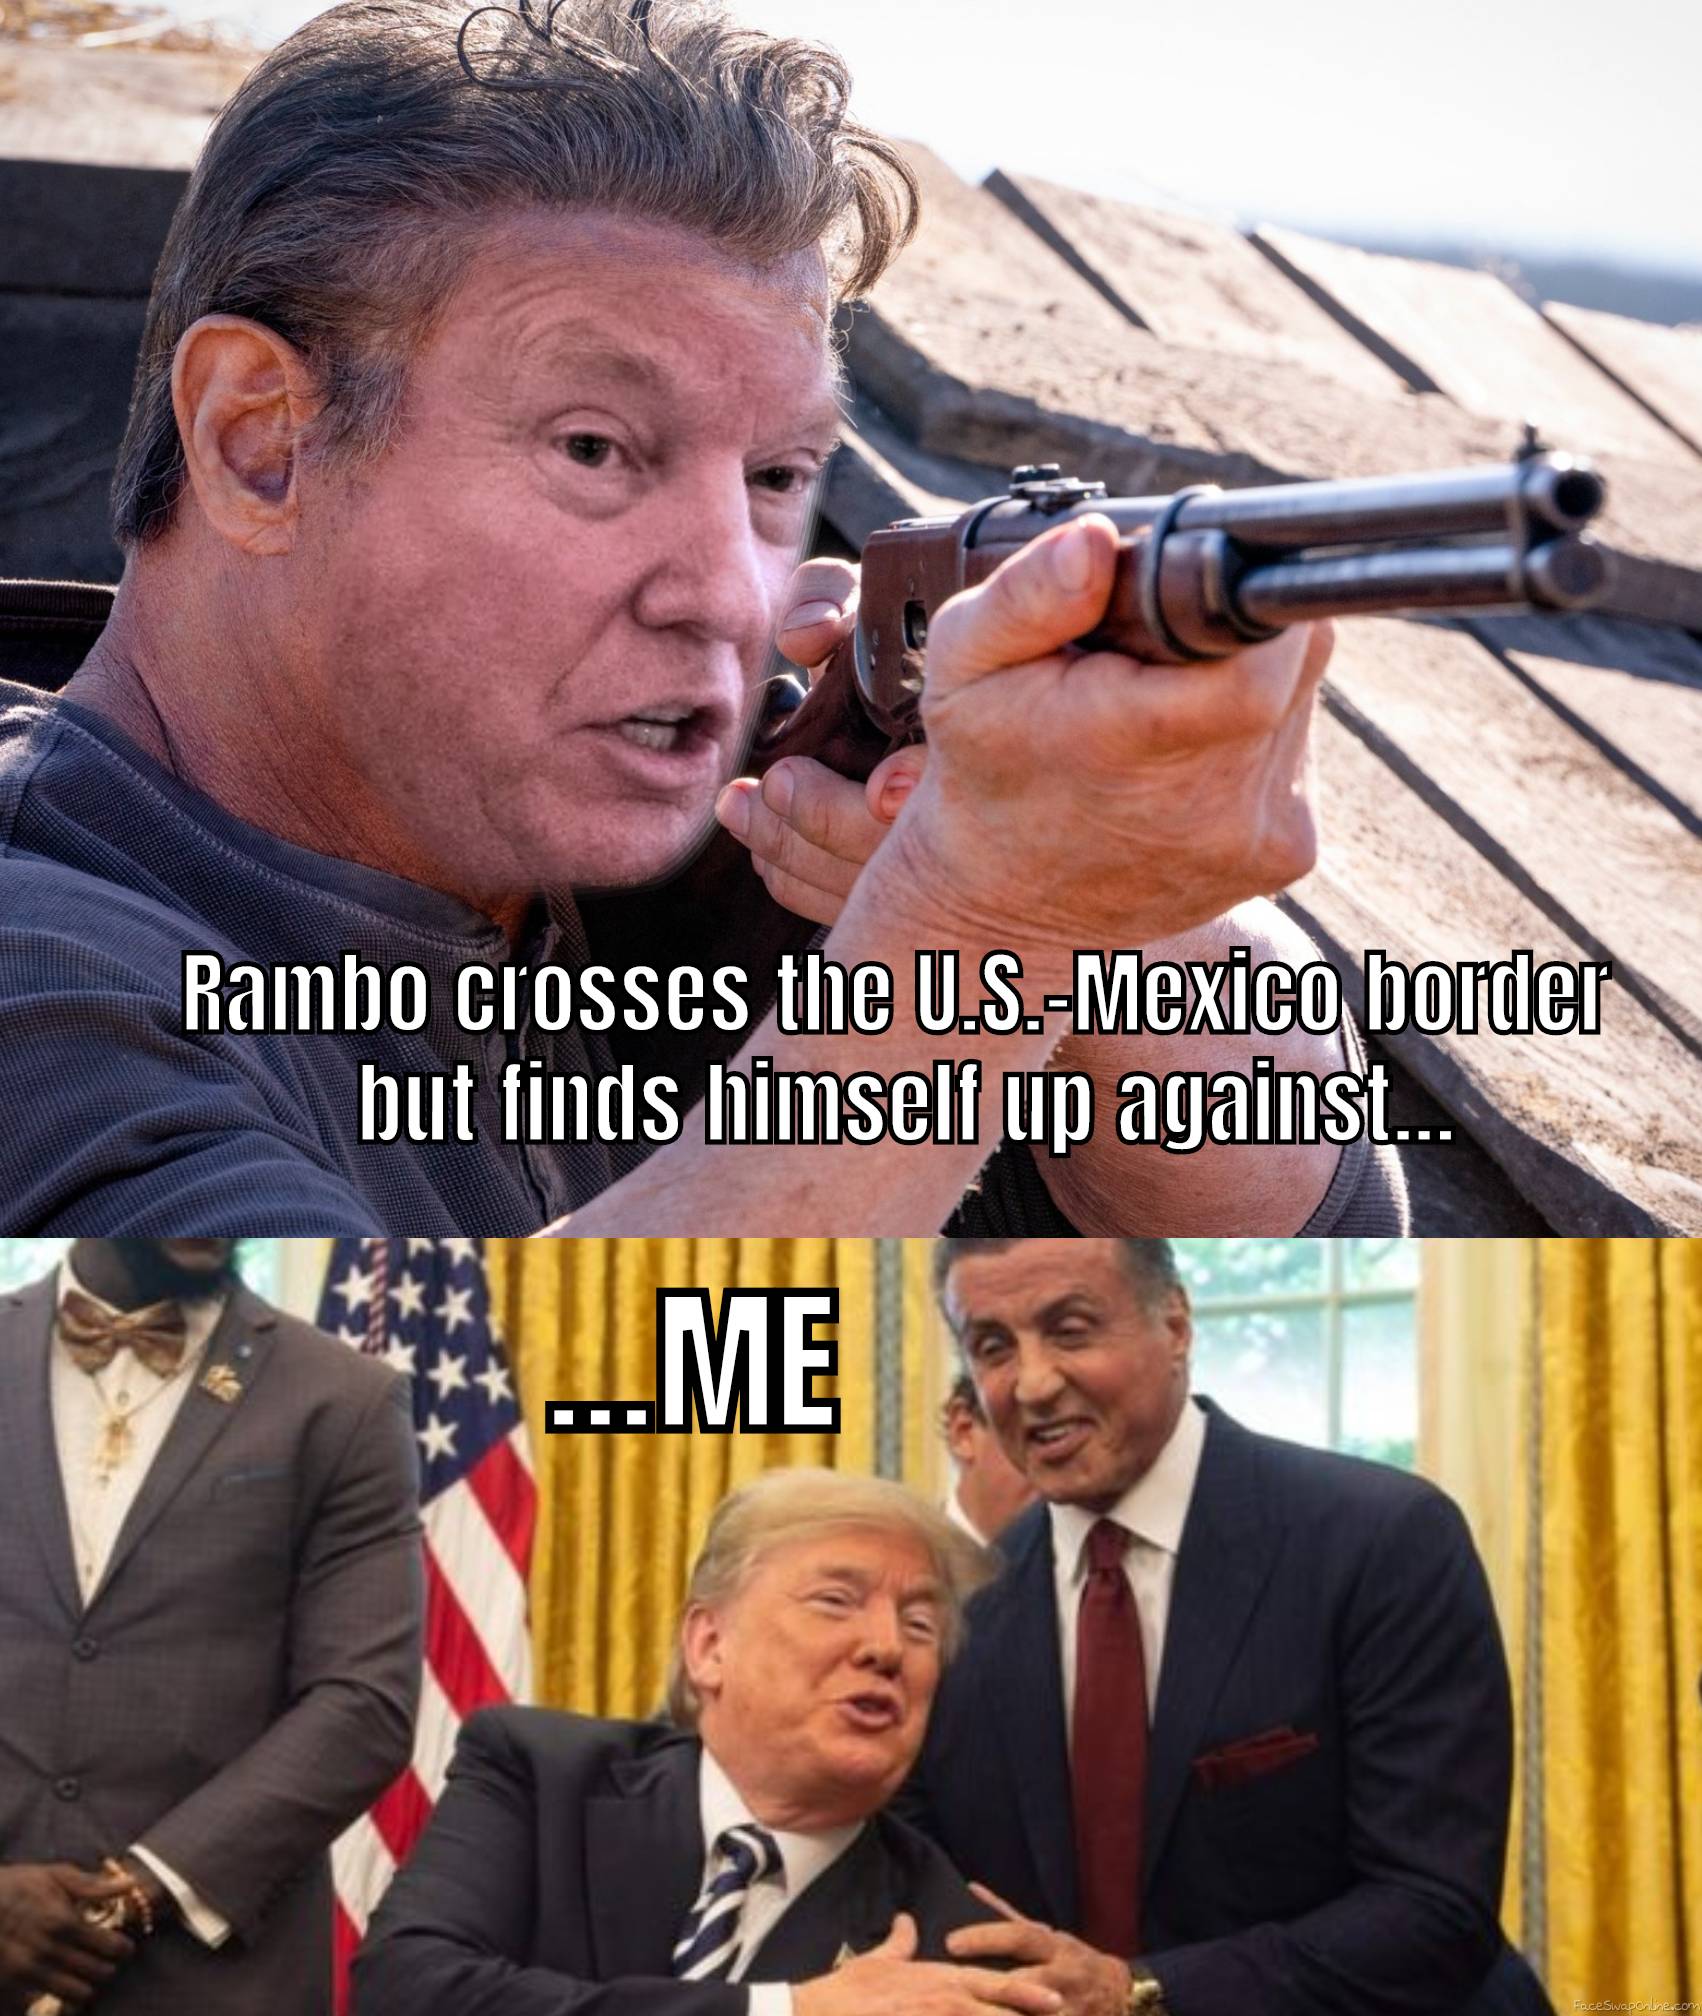 When Rambo crosses Mexican border